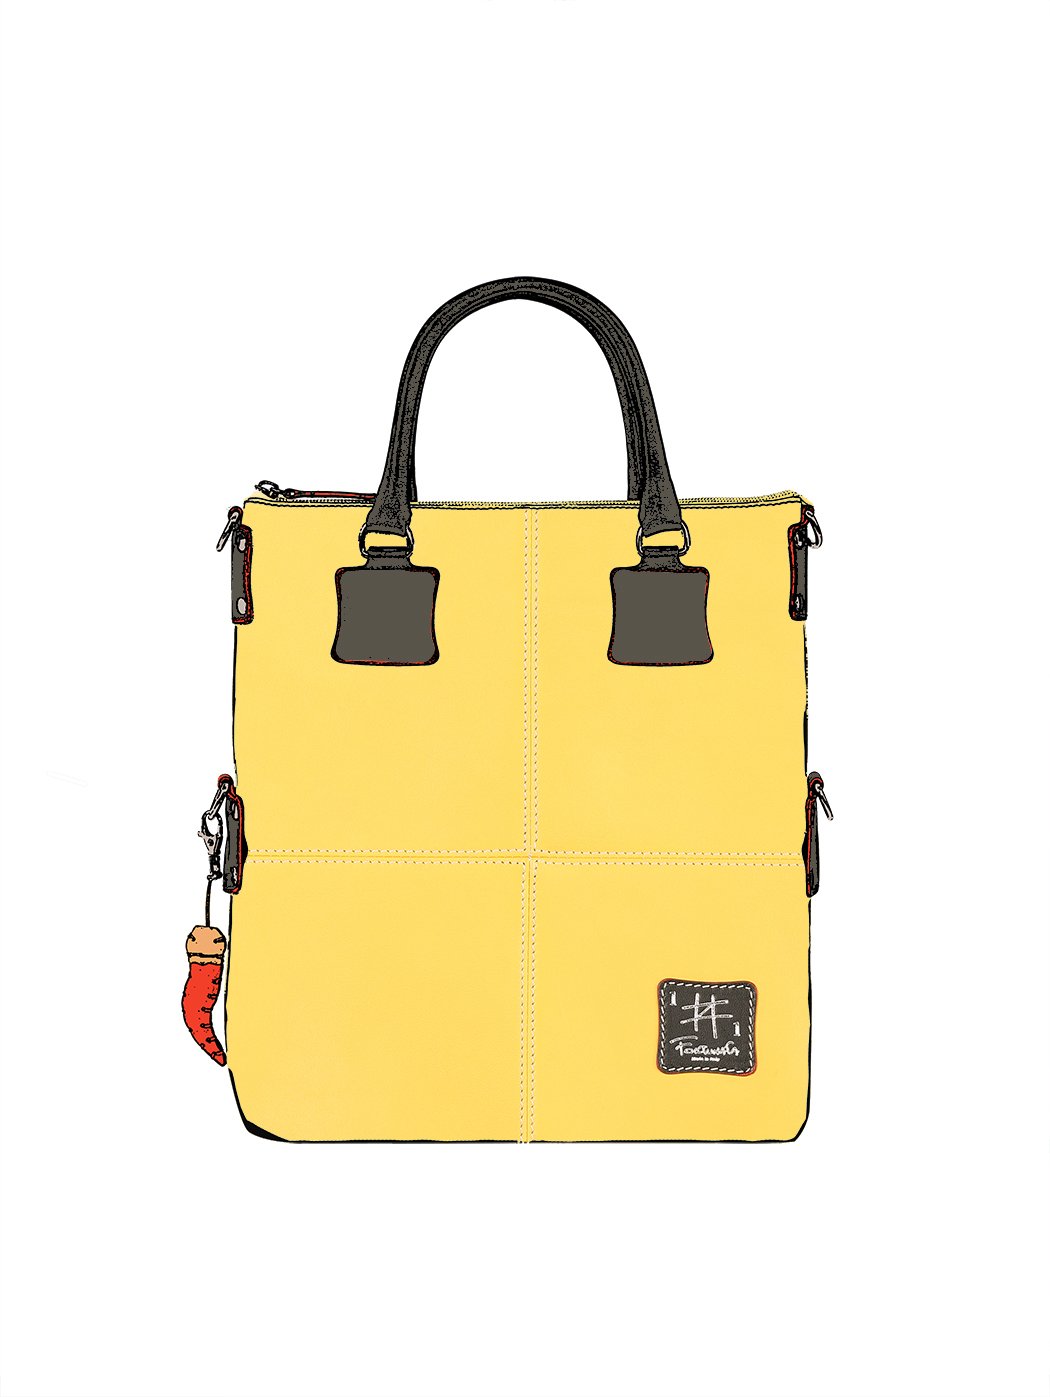 Дизайнерская сумка из коллекции Fortunata желтого цвета